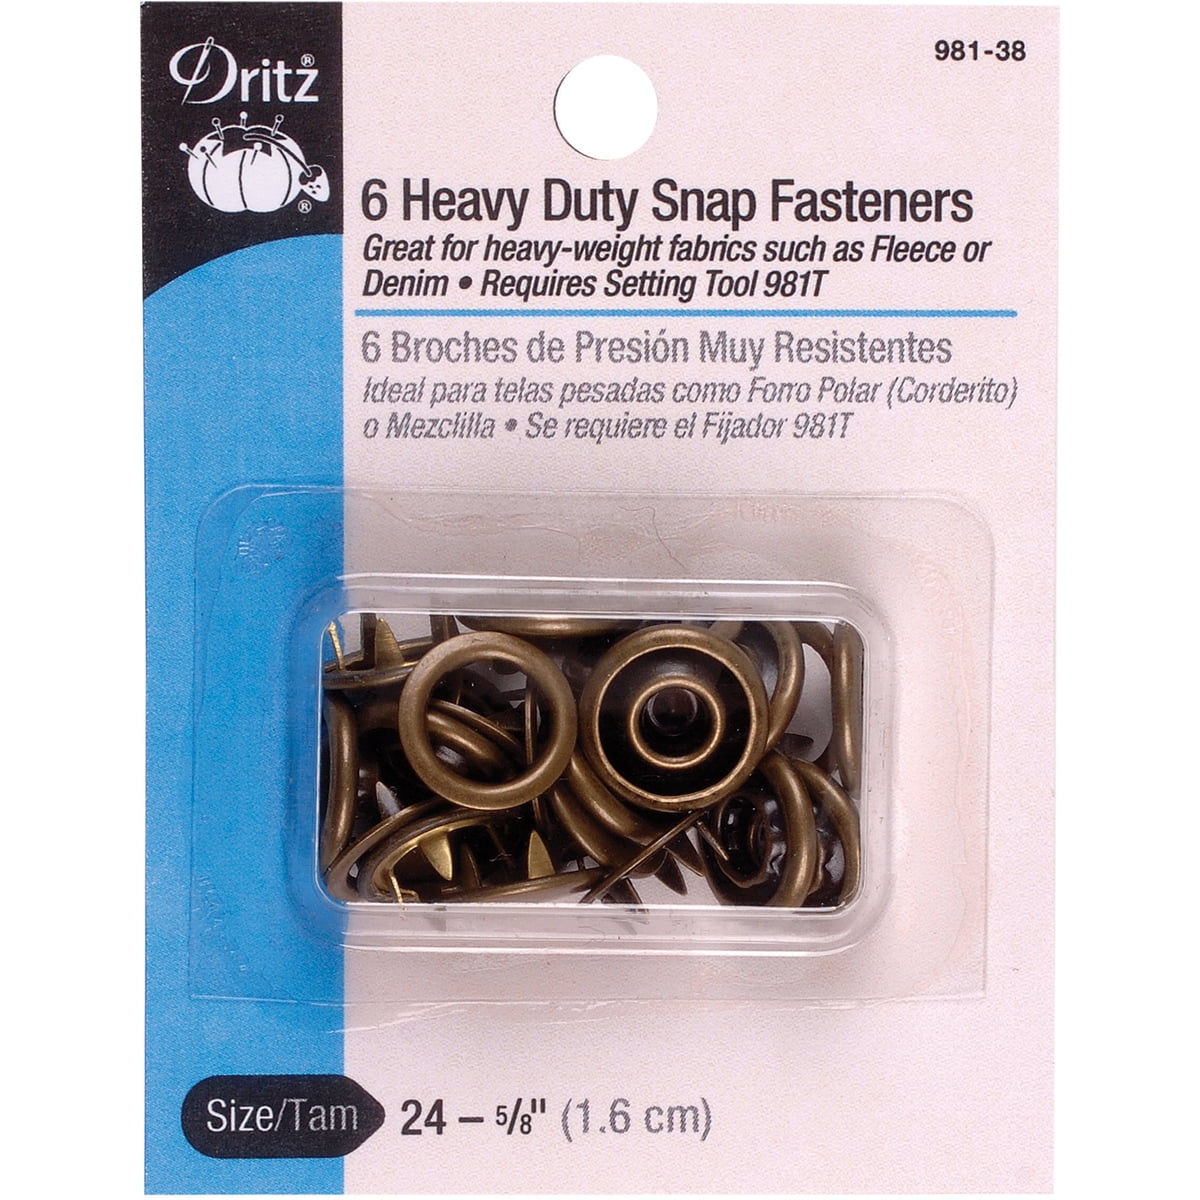 Dritz® Silver Heavy Duty Snaps & Tools, 5/8